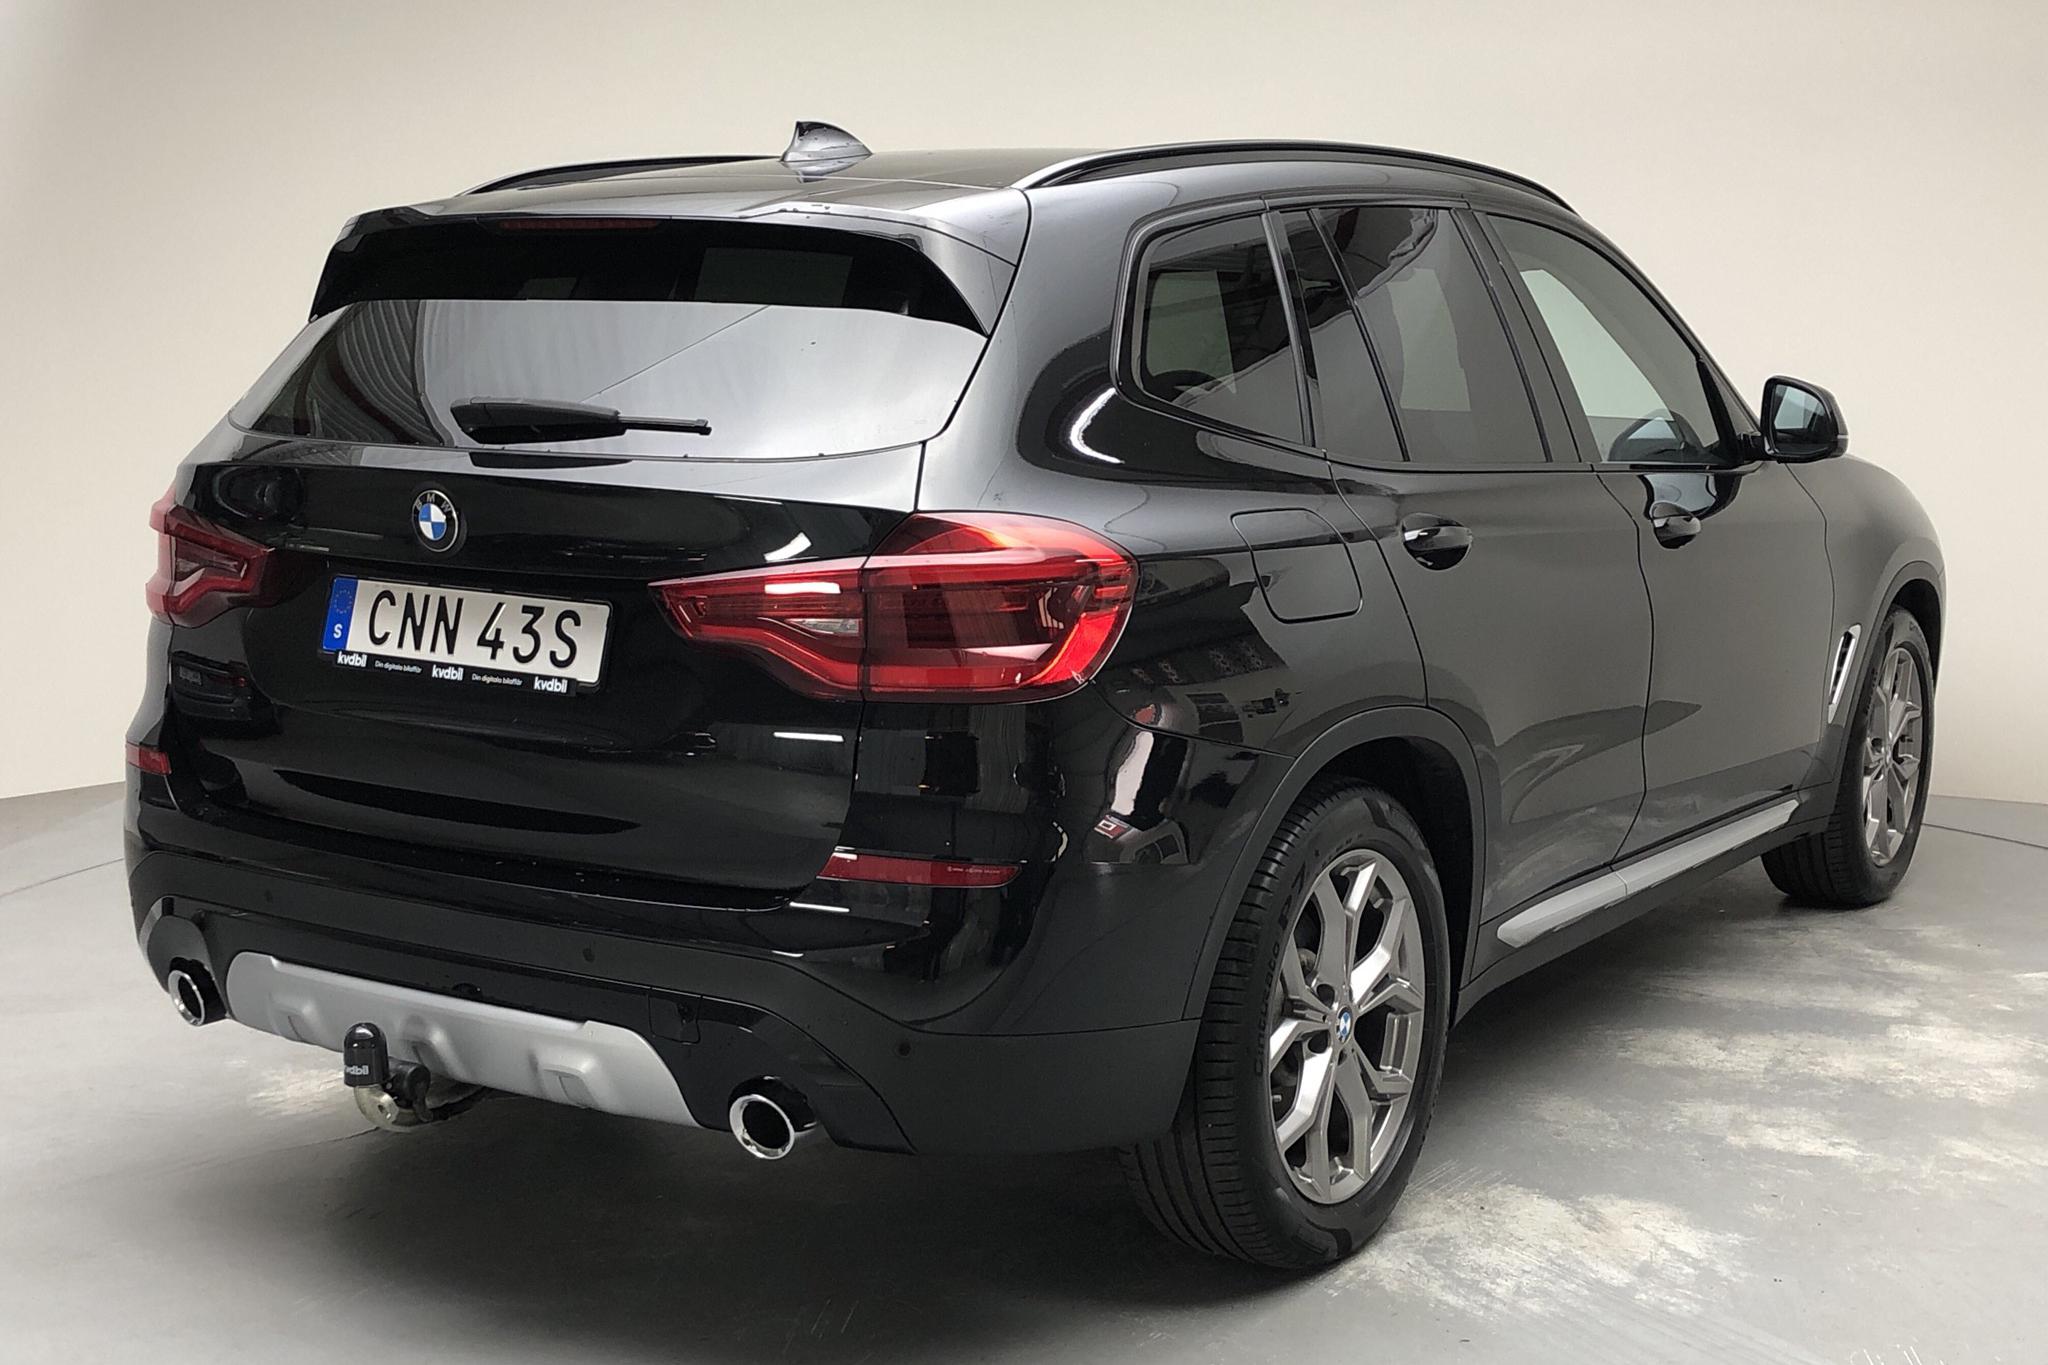 BMW X3 xDrive20d, G01 (190hk) - 35 820 km - Automatic - black - 2019